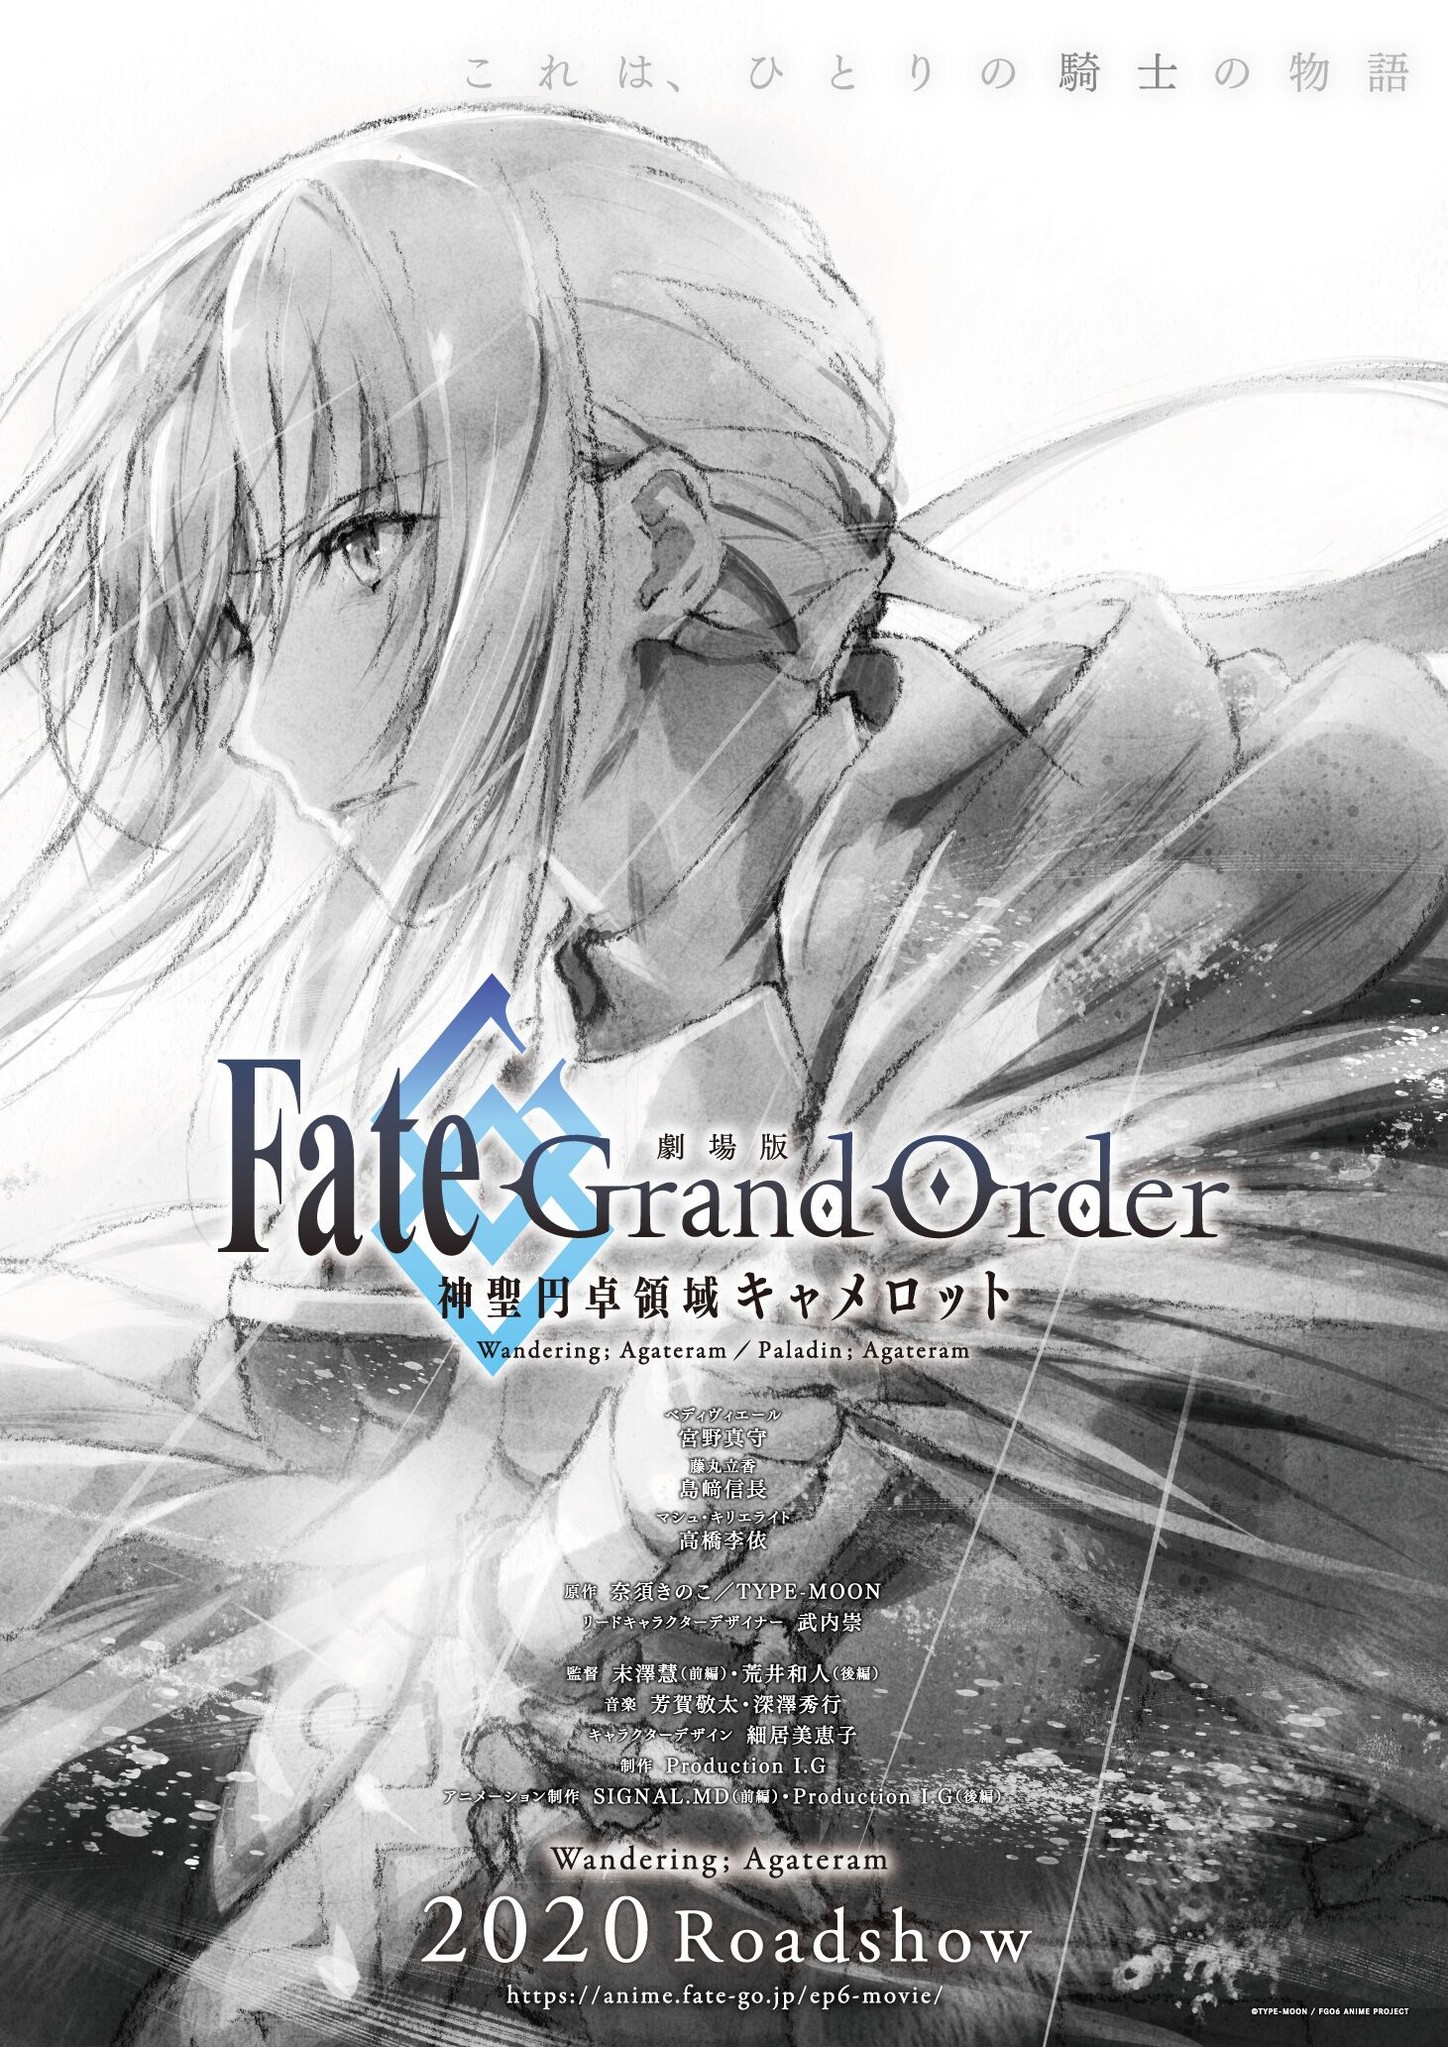 劇場版 Fate Grand Order 神聖円卓領域キャメロット コンセプトビジュアル スタッフ キャスト情報 前編公開時期を発表 株式会社アニプレックスのプレスリリース